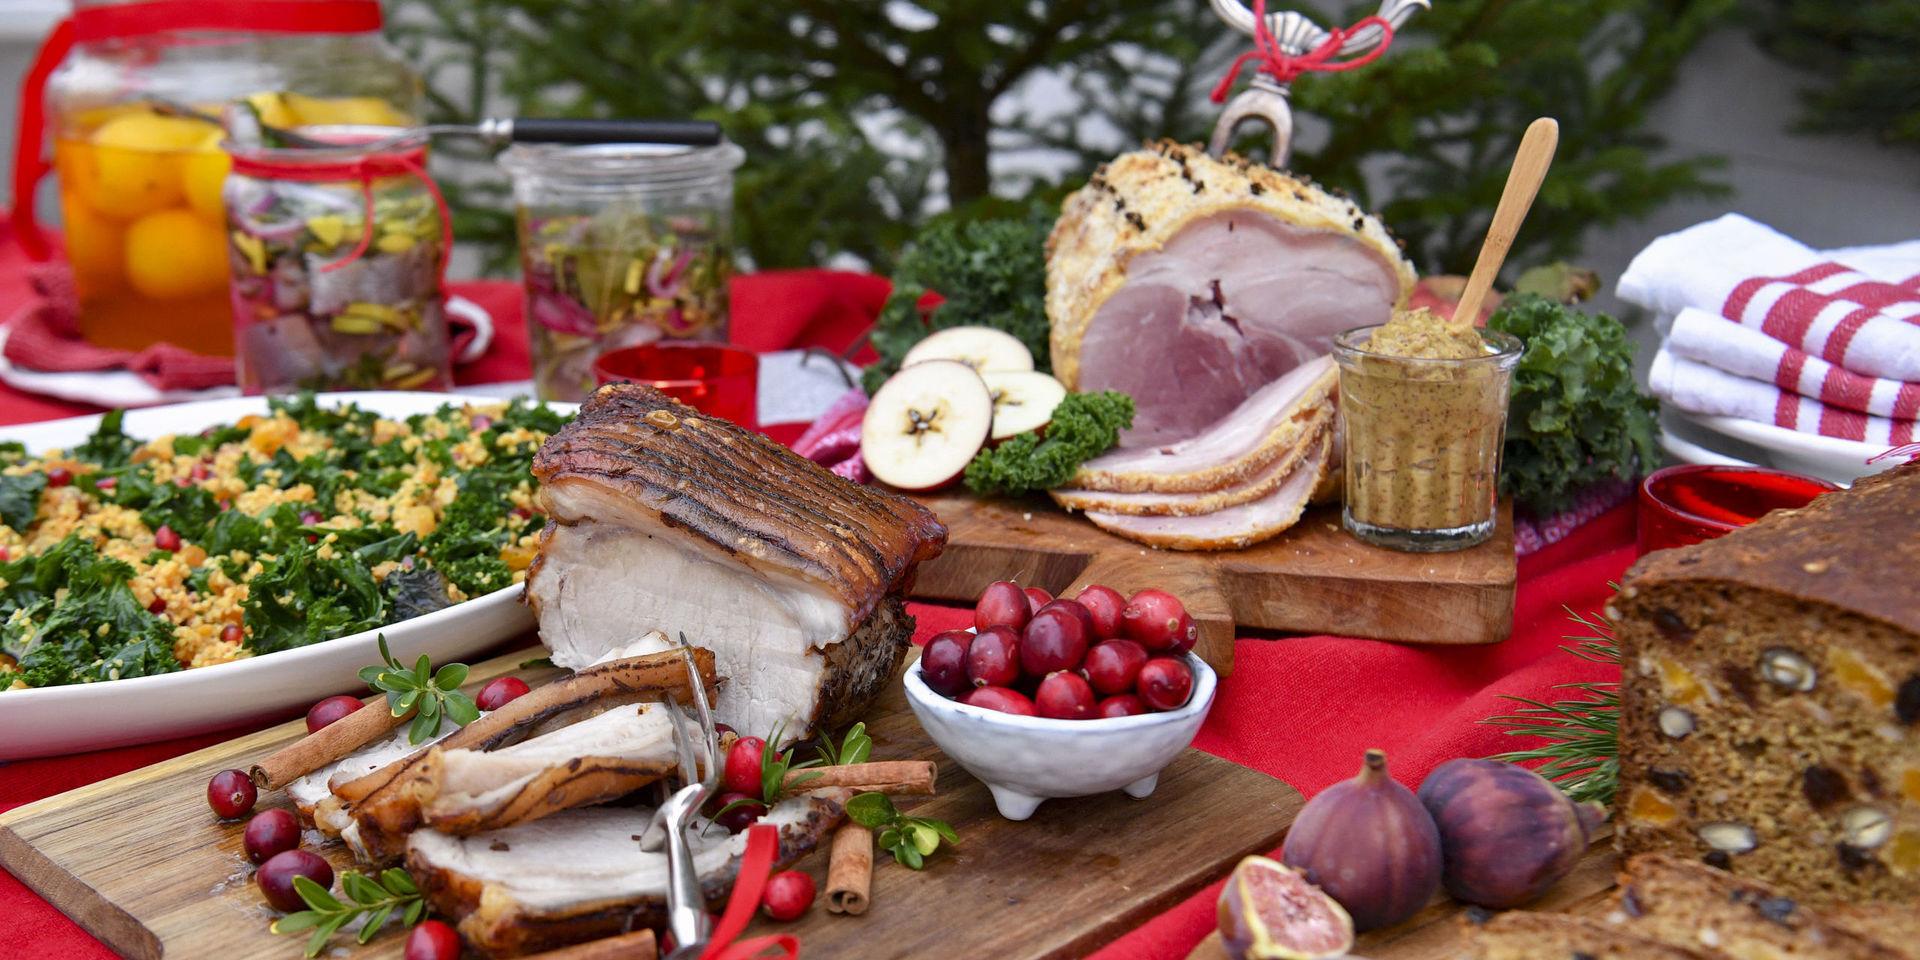 Griljerad skinka har av tradition en central plats i julens måltider. Julbordet på bilden har ingen koppling till det julbord i Skaraborg som orsakade kräkningar och diarré. 